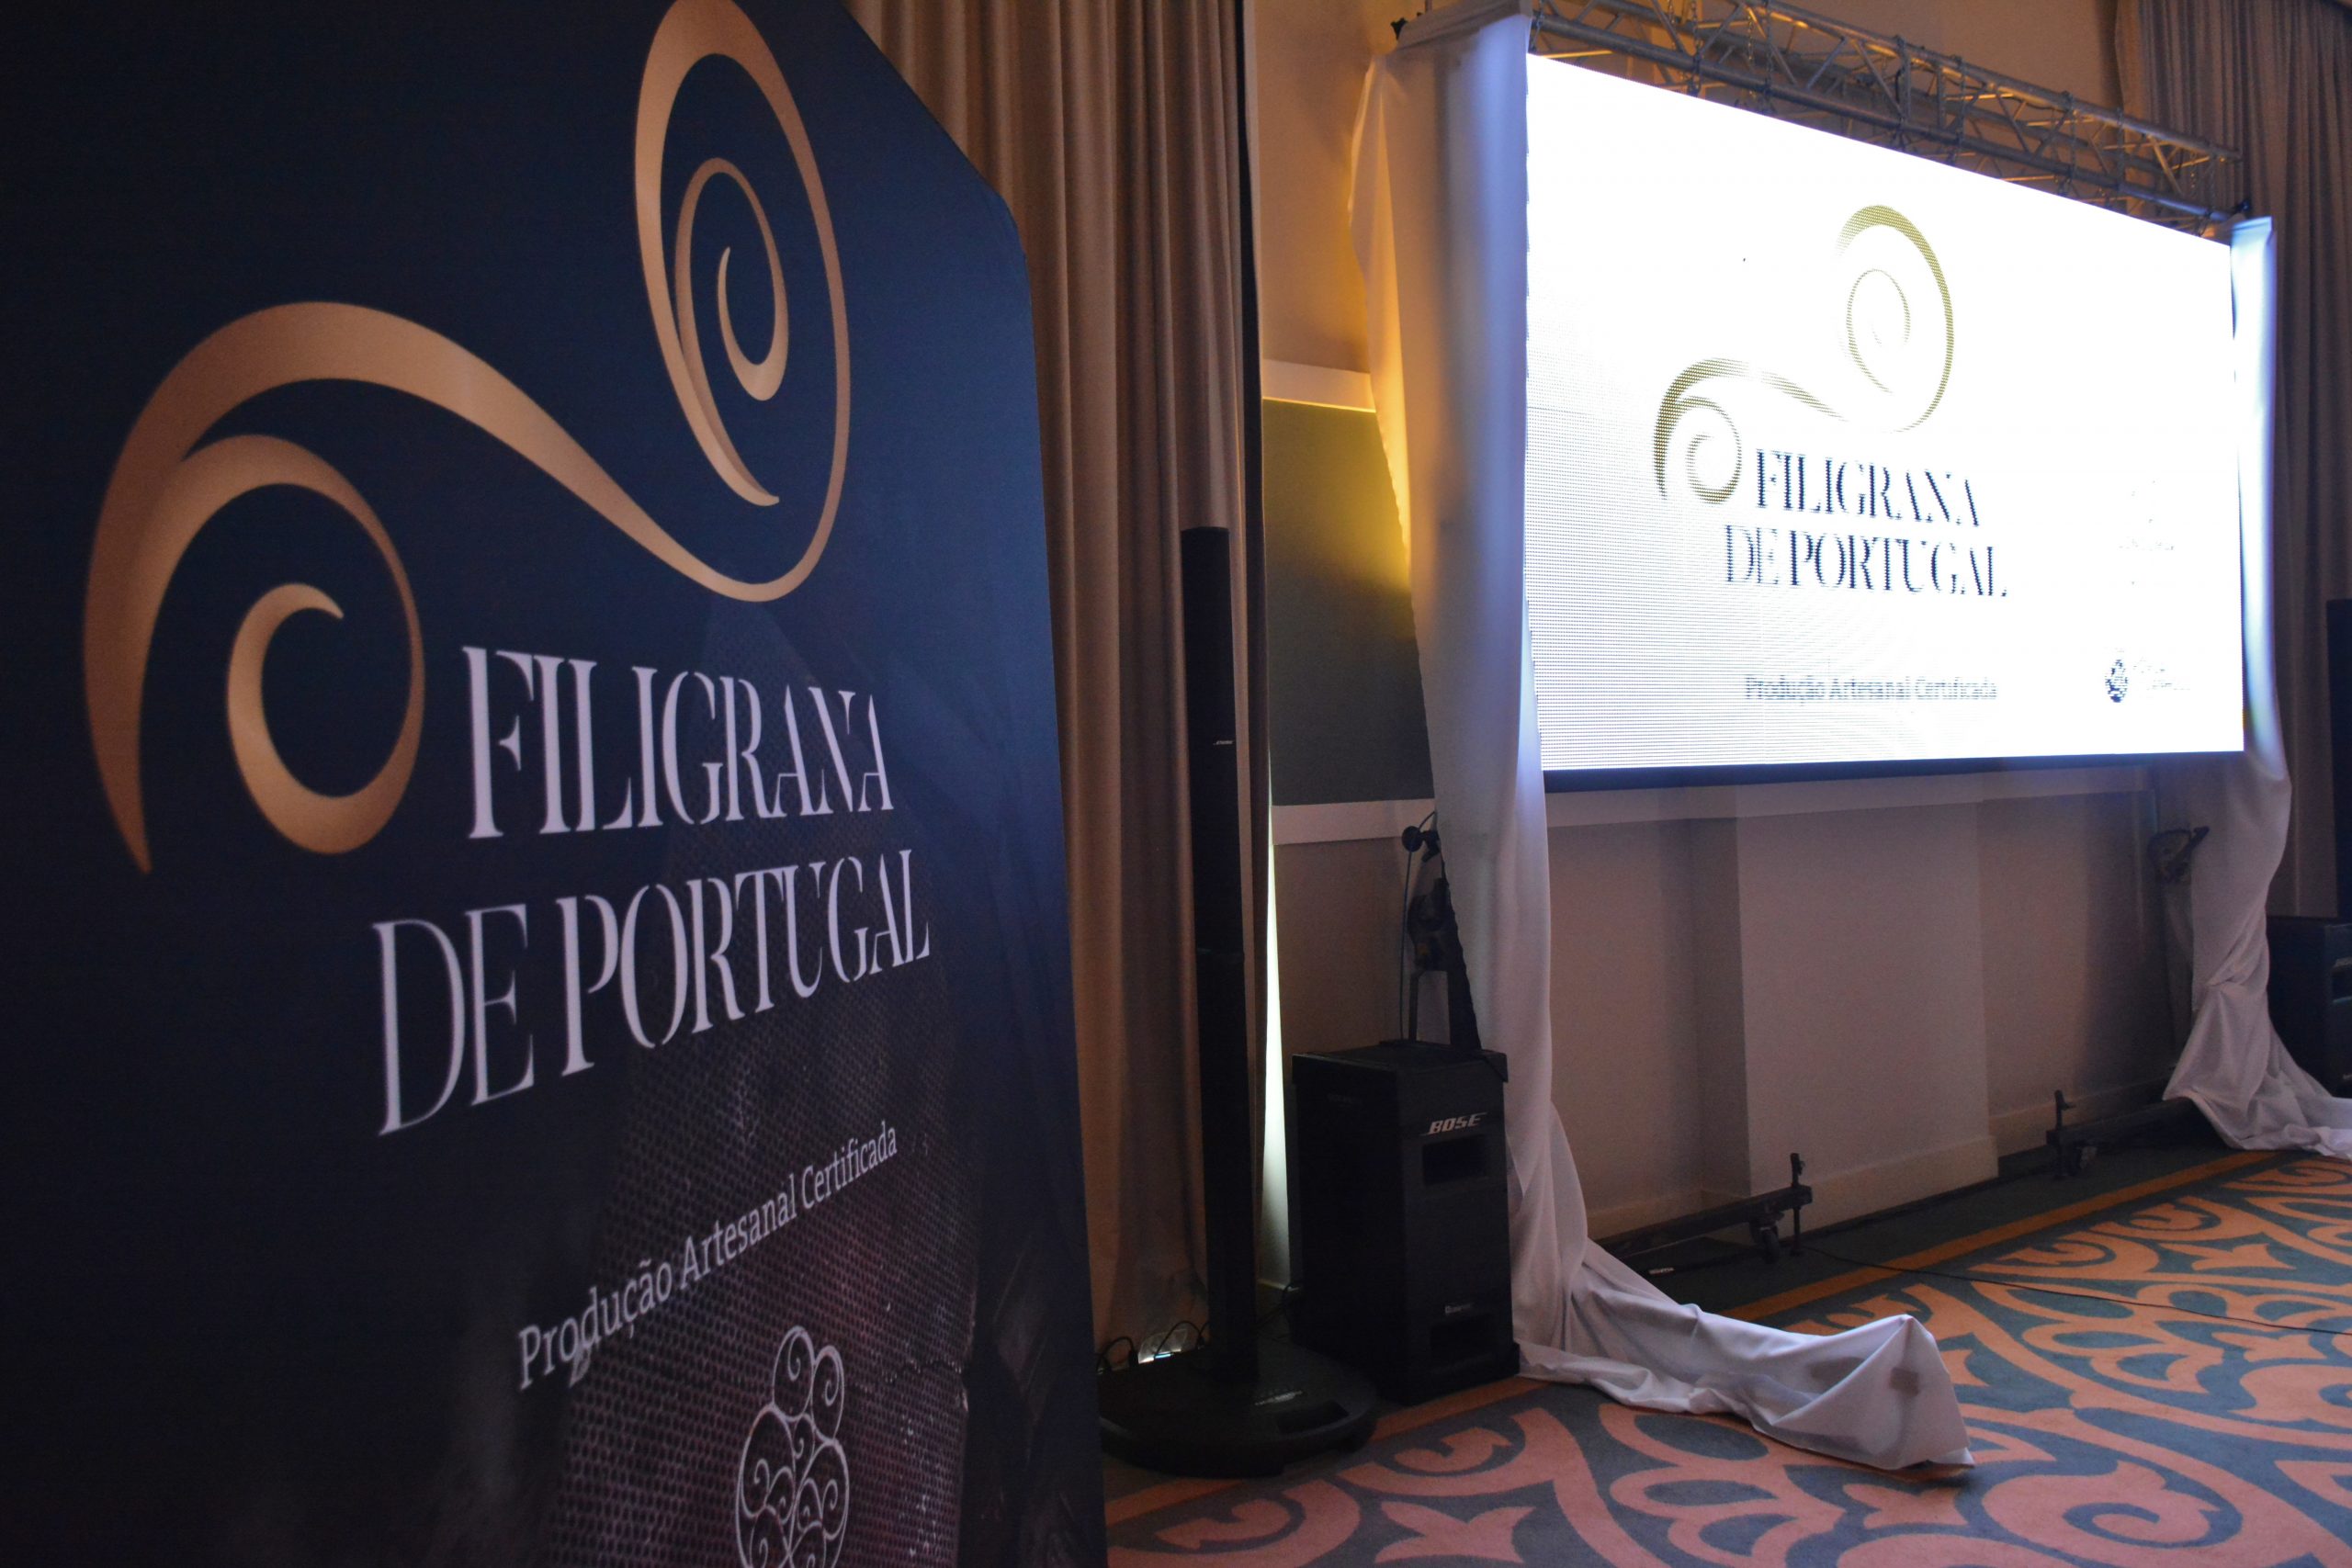 Galeria de Fotos - Filigrana certificada é “Filigrana de Portugal”